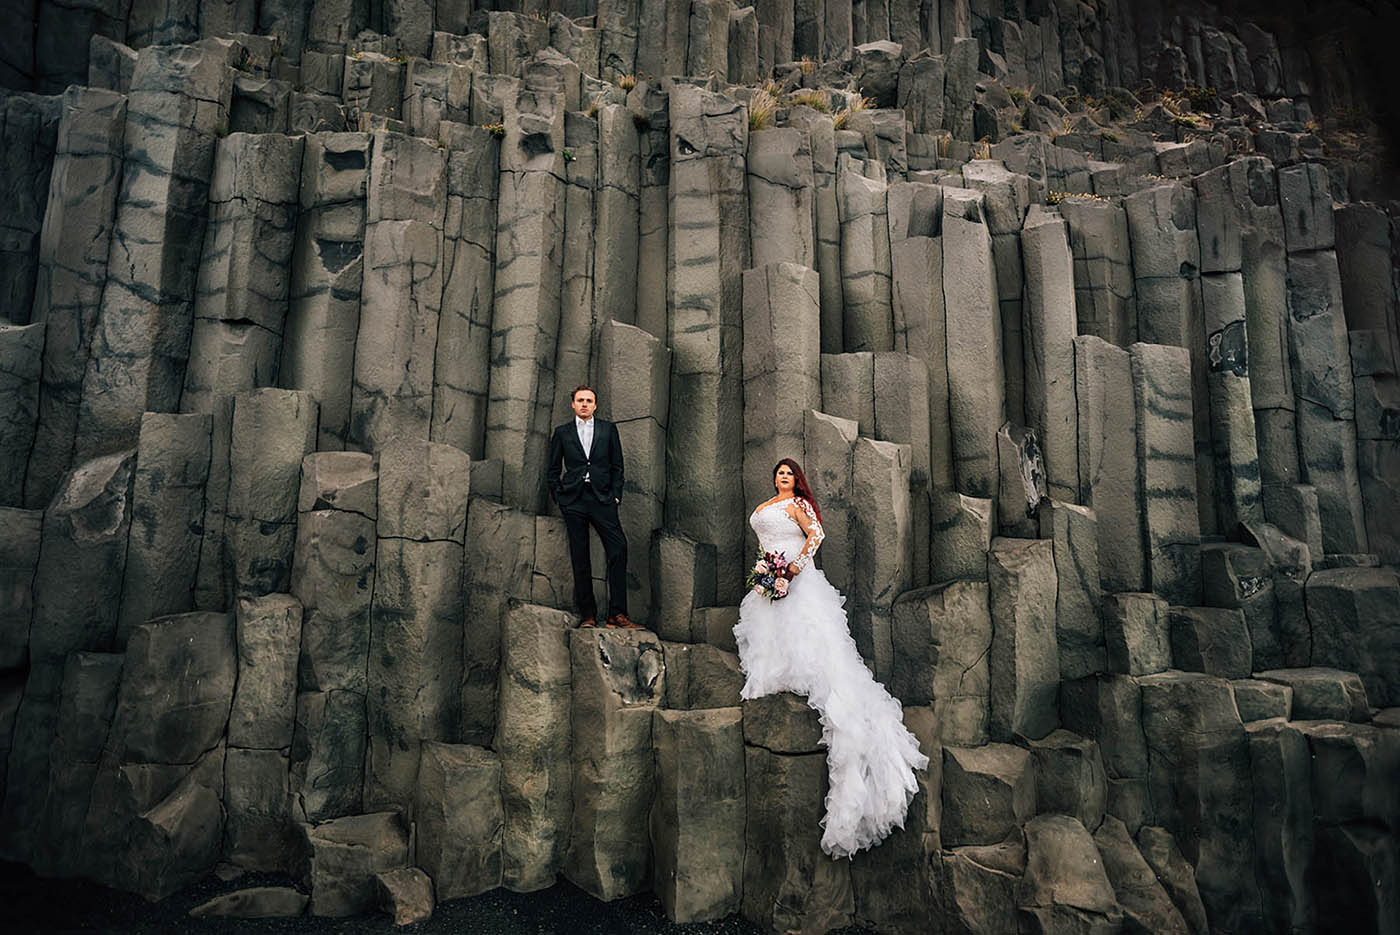 Wedding Photos on Basalt Columns at Reynisfjara Black Sand Beach Iceland